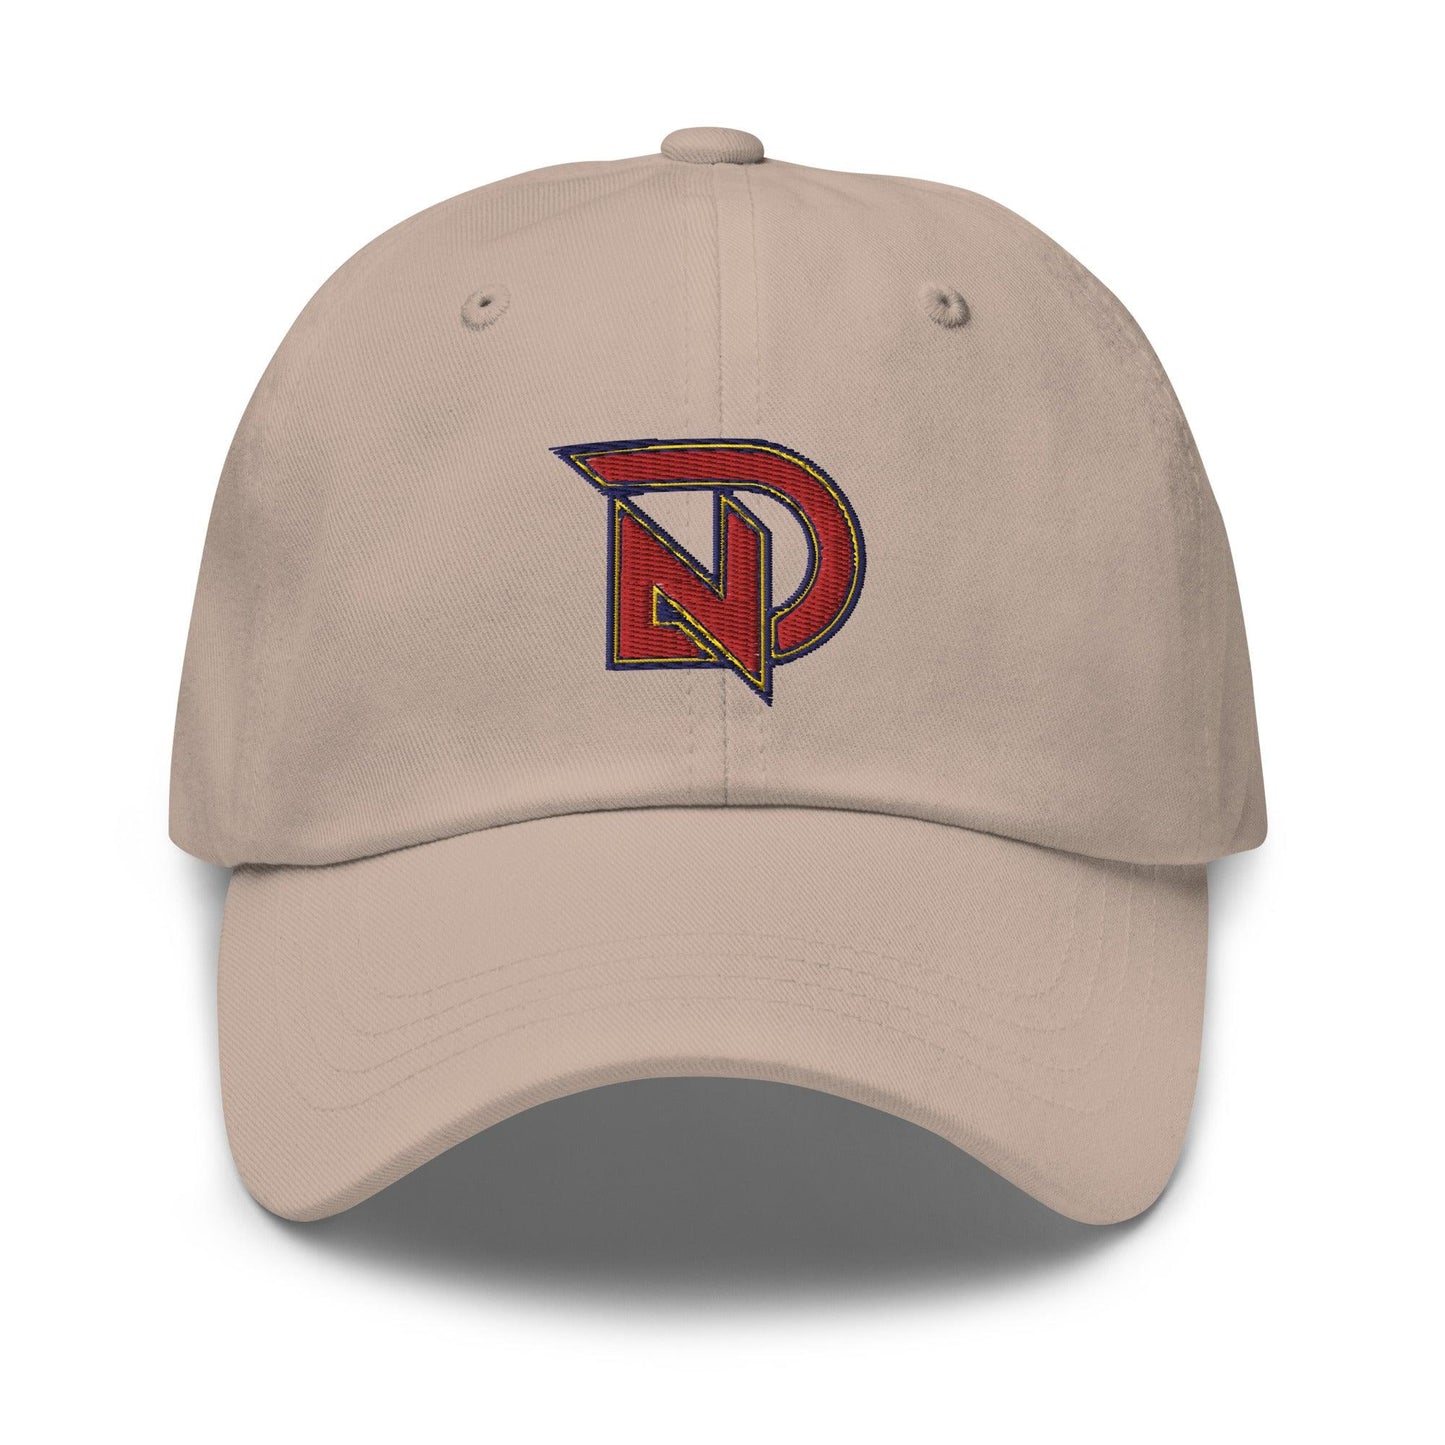 NIck Dunn "Elite" hat - Fan Arch